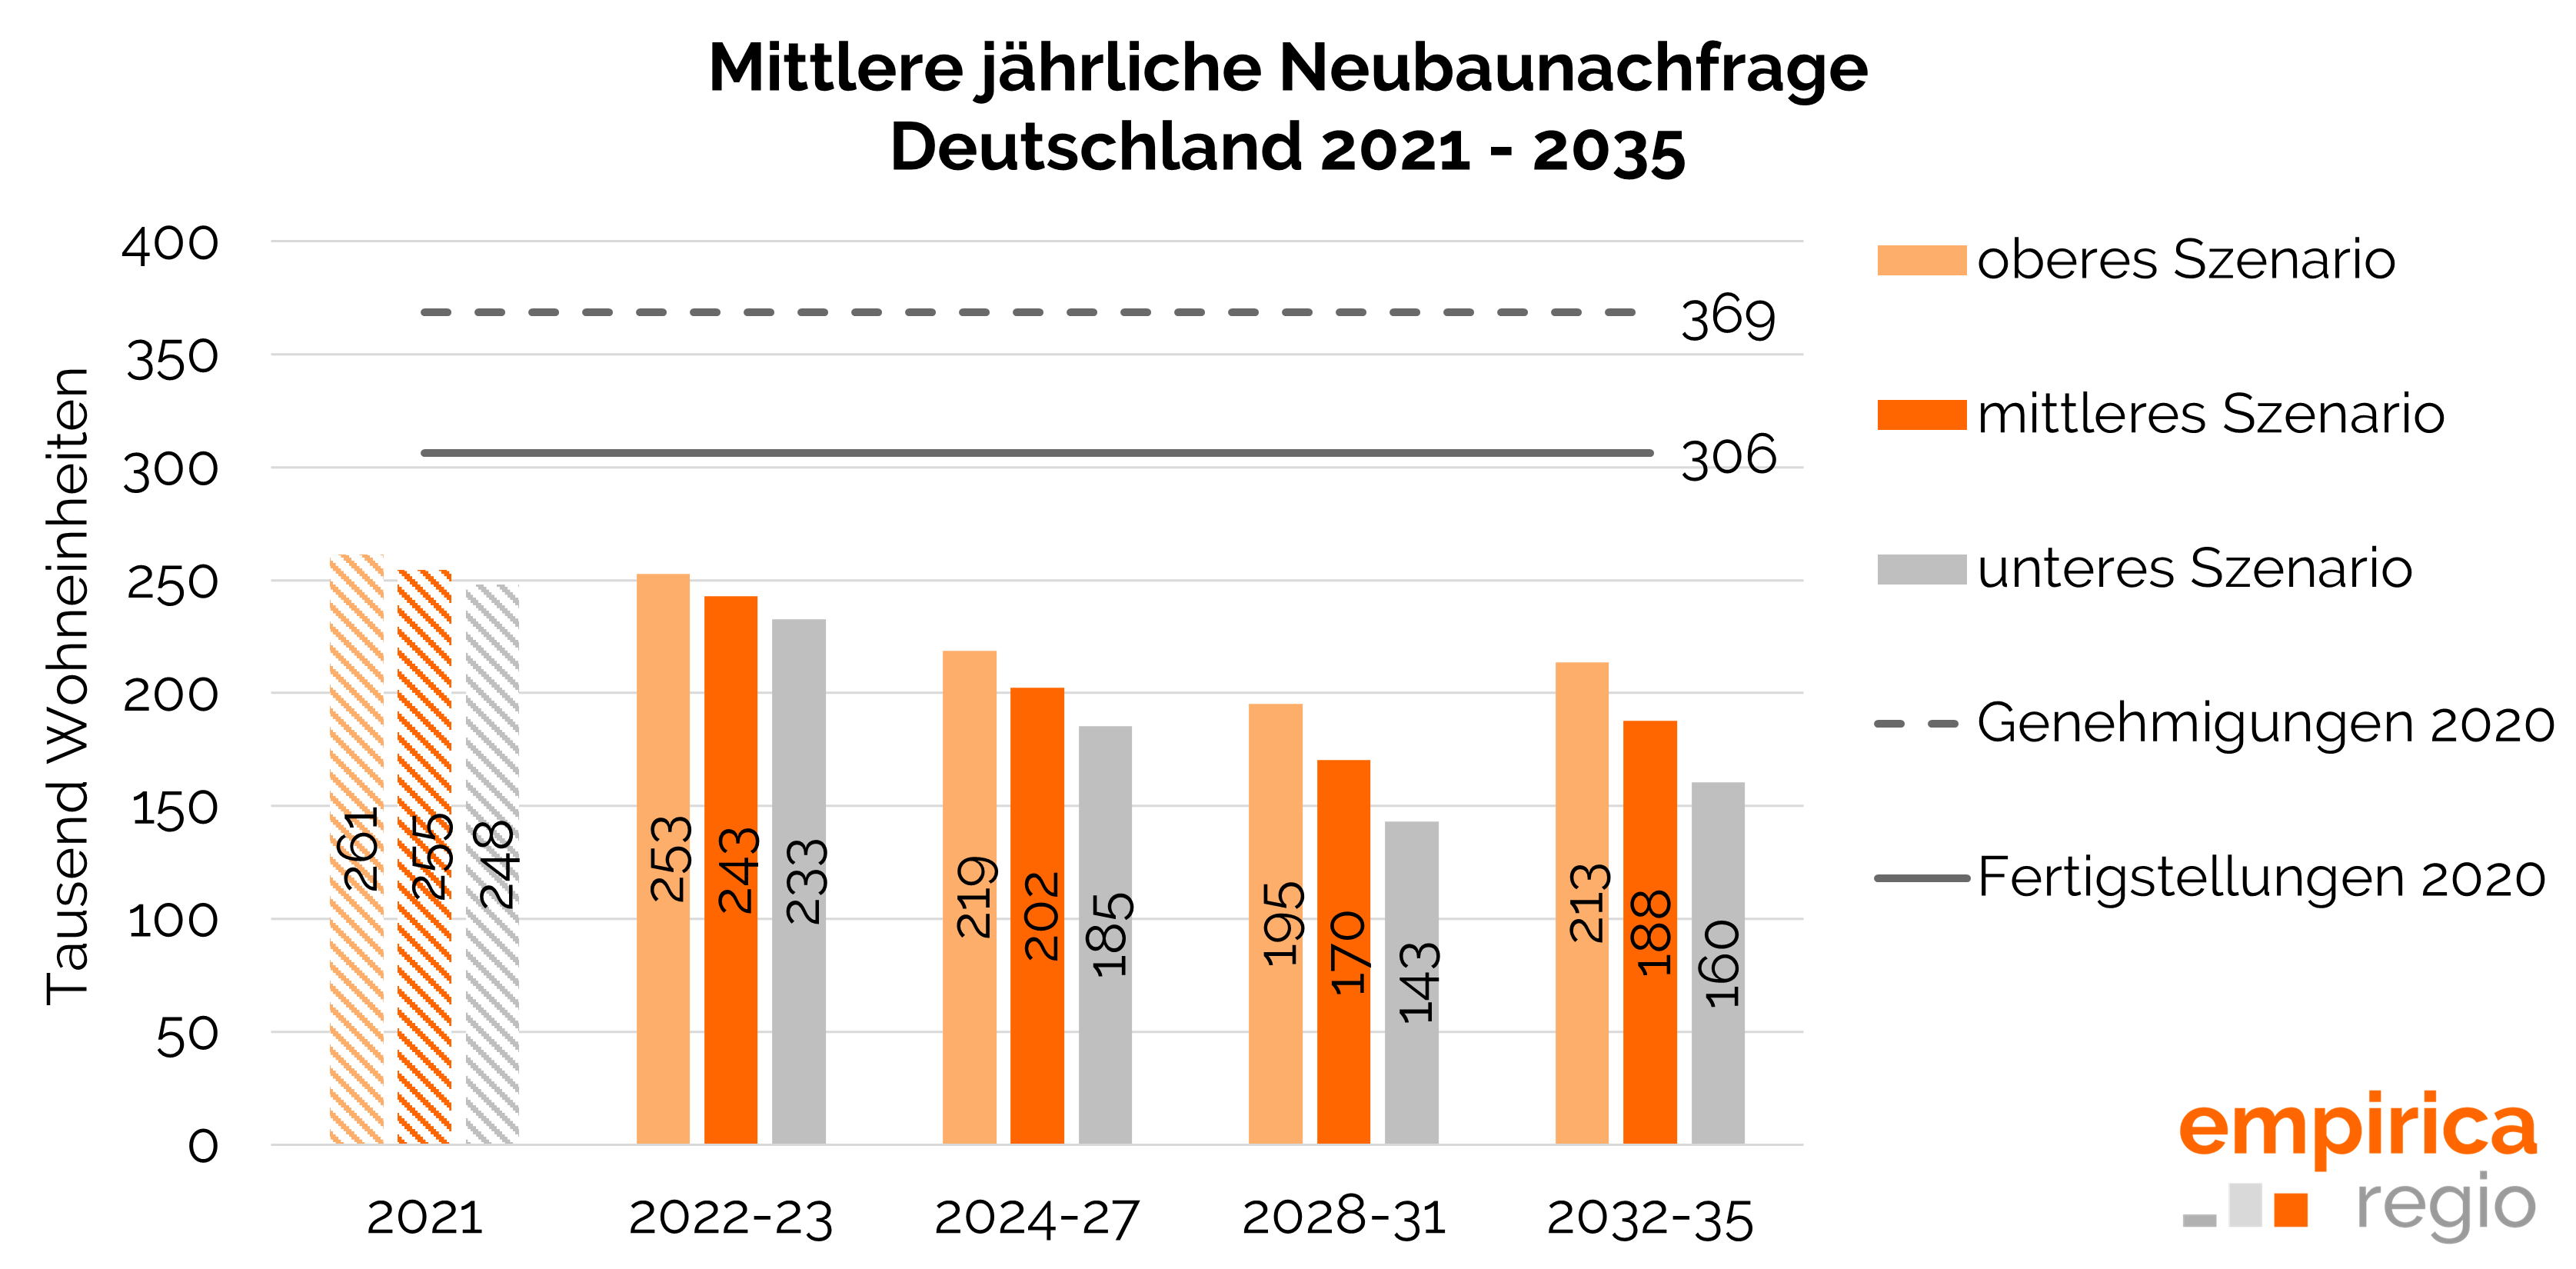 Entwicklung der mittleren jährlichen Neubaunachfrage in Deutschland 2021 bis 2035